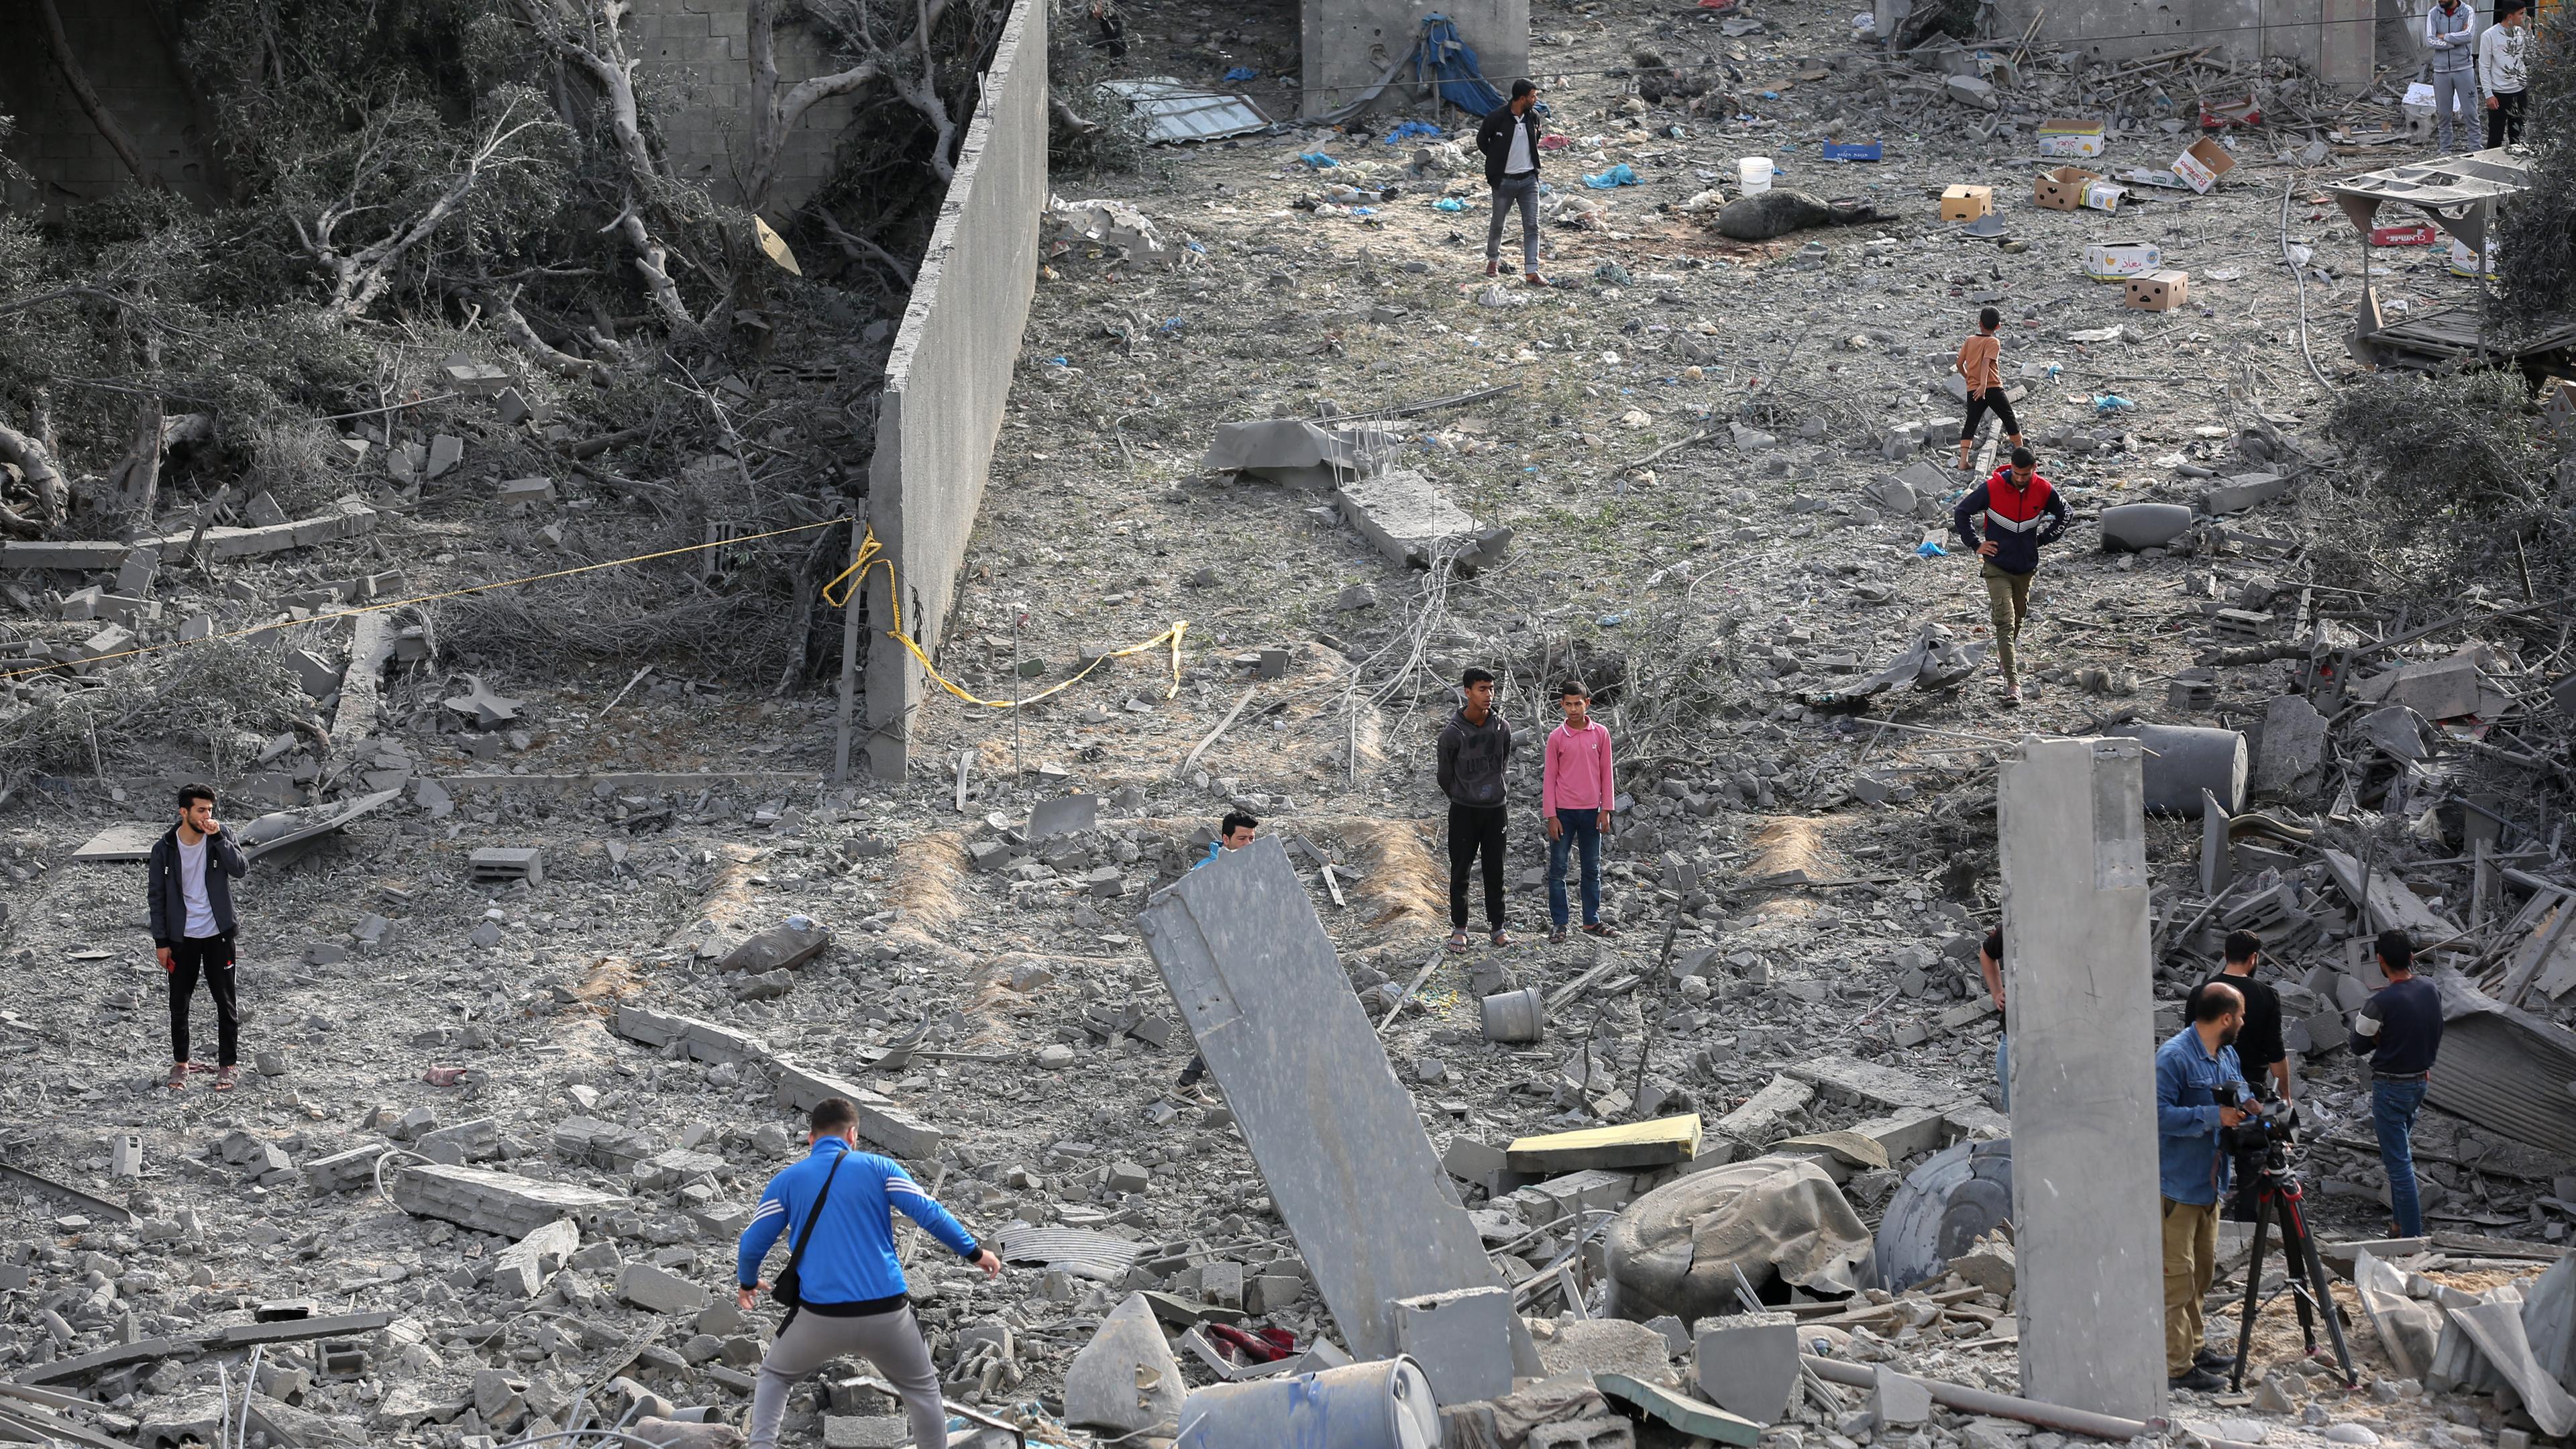 Palästinensische Gebiete, Gaza: Palästinensische Bürger begutachten die Schäden in ihren Häusern nach dem israelischen Bombenangriff auf das Haus der Familie Abu Obeid in der Stadt Deir Al-Balah, im Zentrum des Gazastreifens.